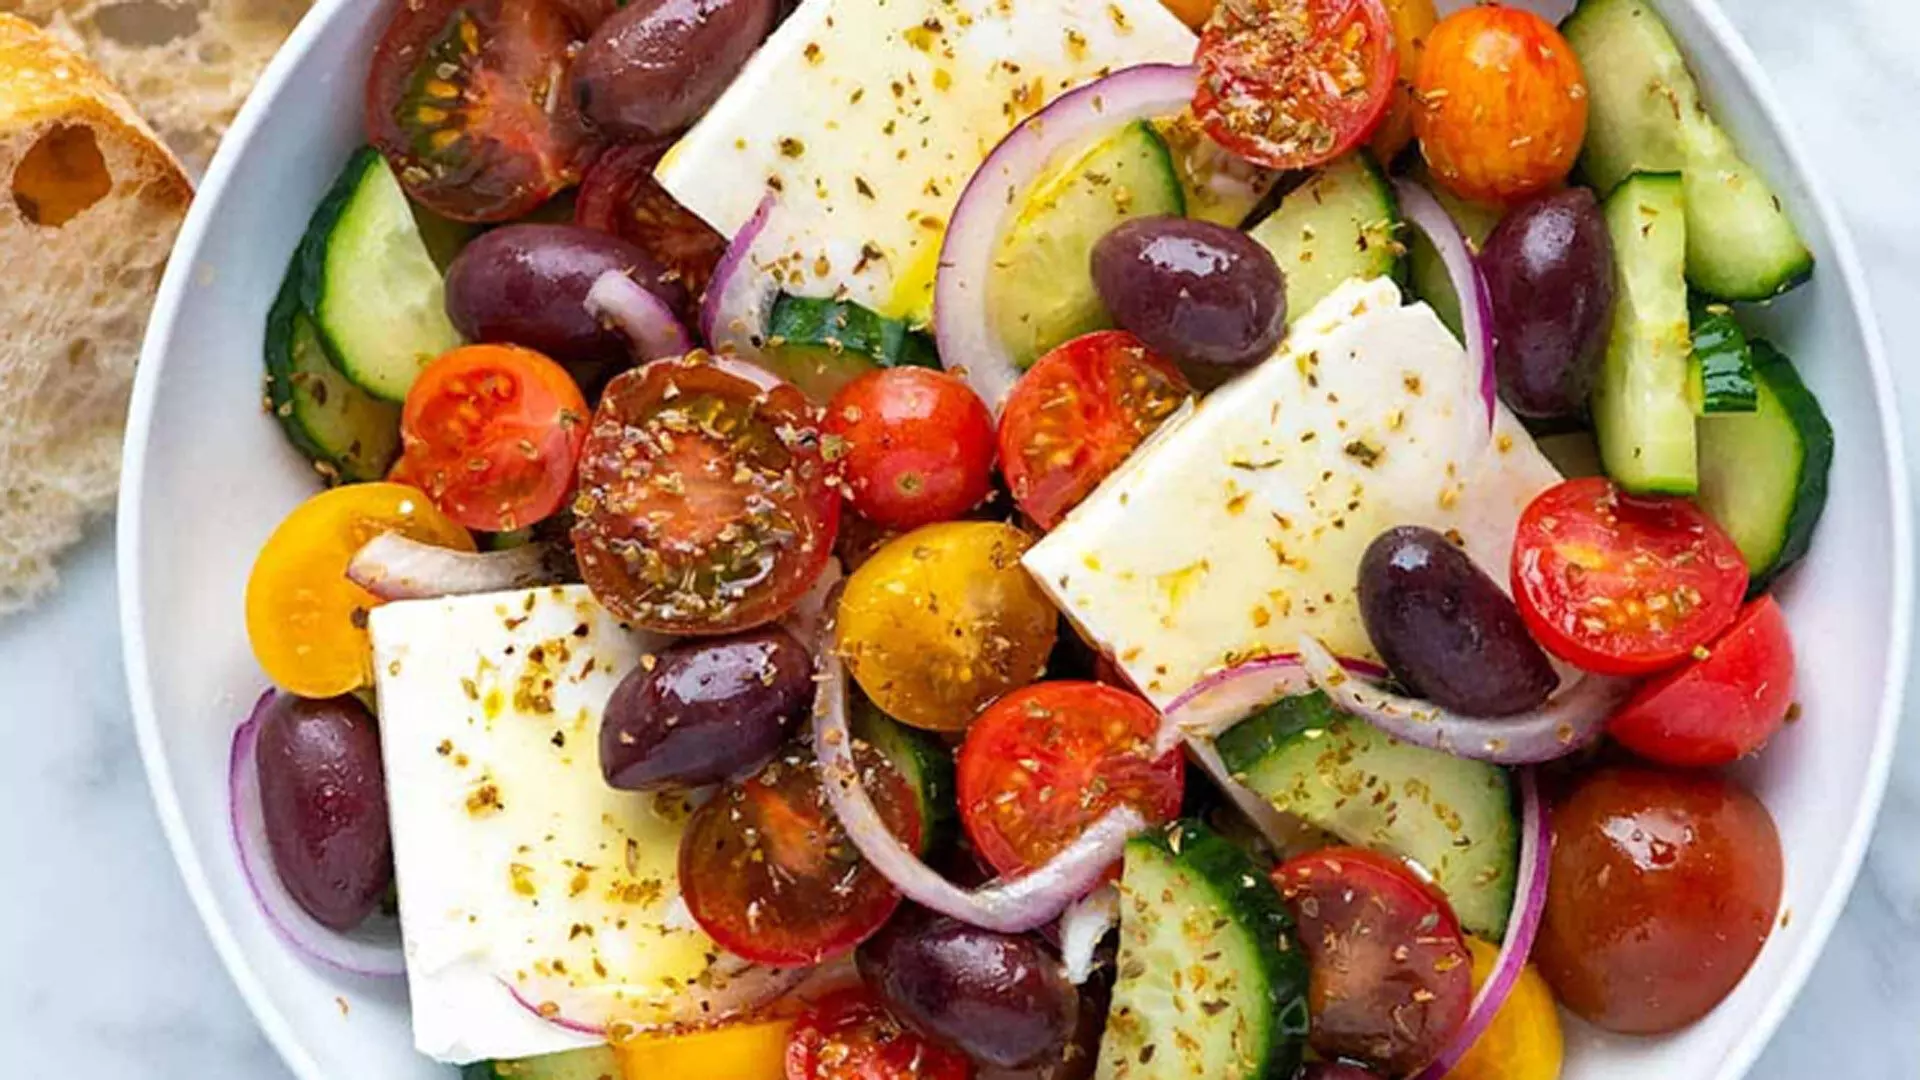 घर पर बनाएं स्वादिष्ट और स्वास्थ्यवर्धक ग्रीक सलाद